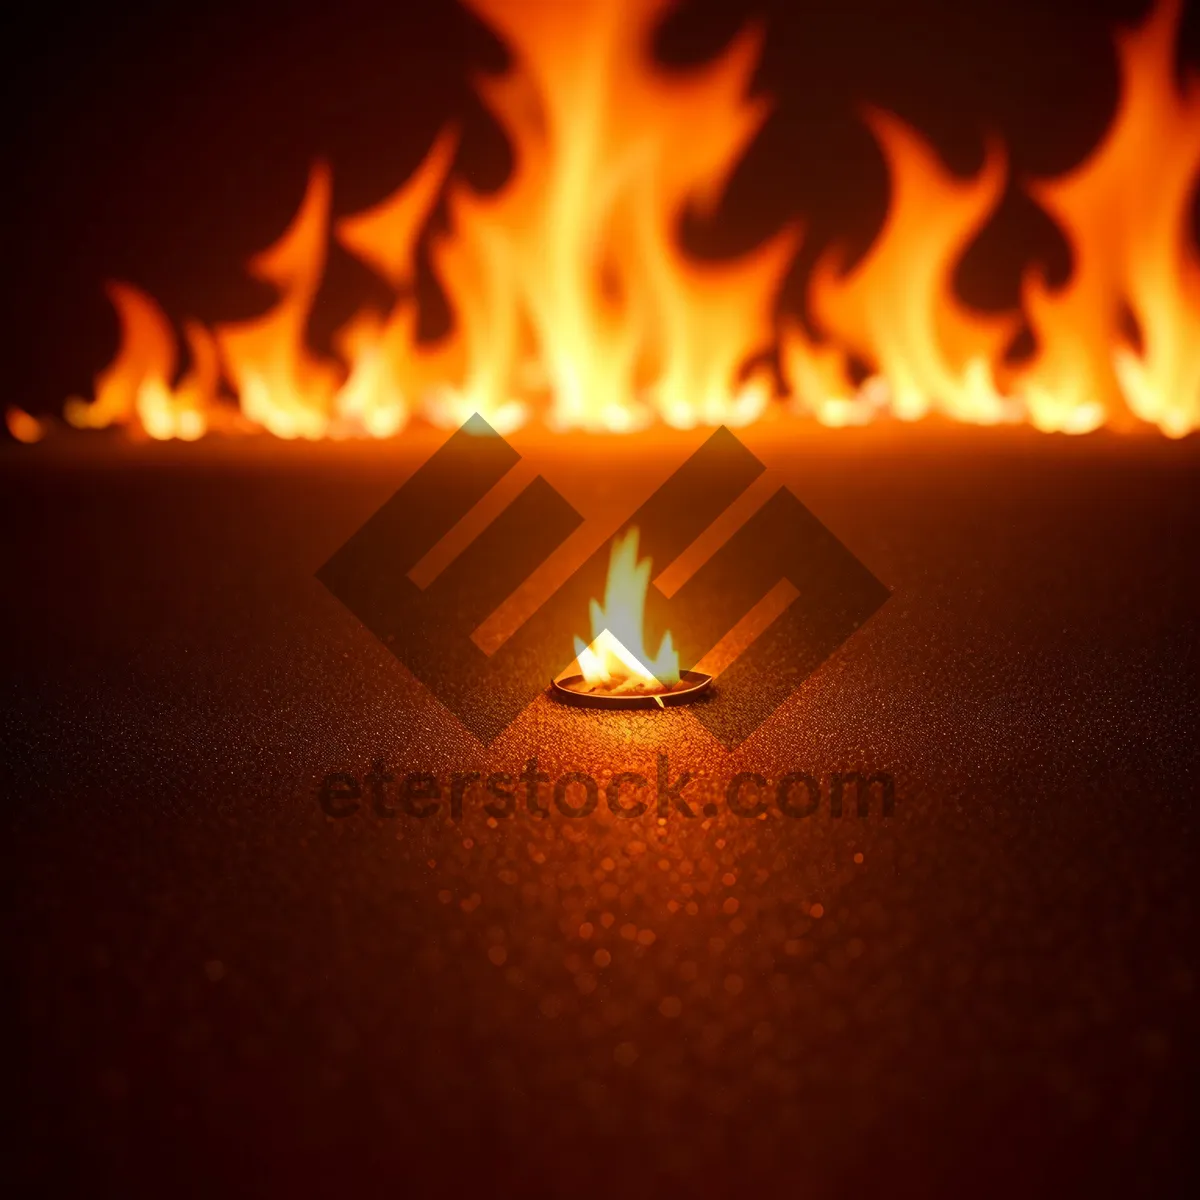 Picture of Fierce Flames: A Fiery Blaze Engulfs the Darkness